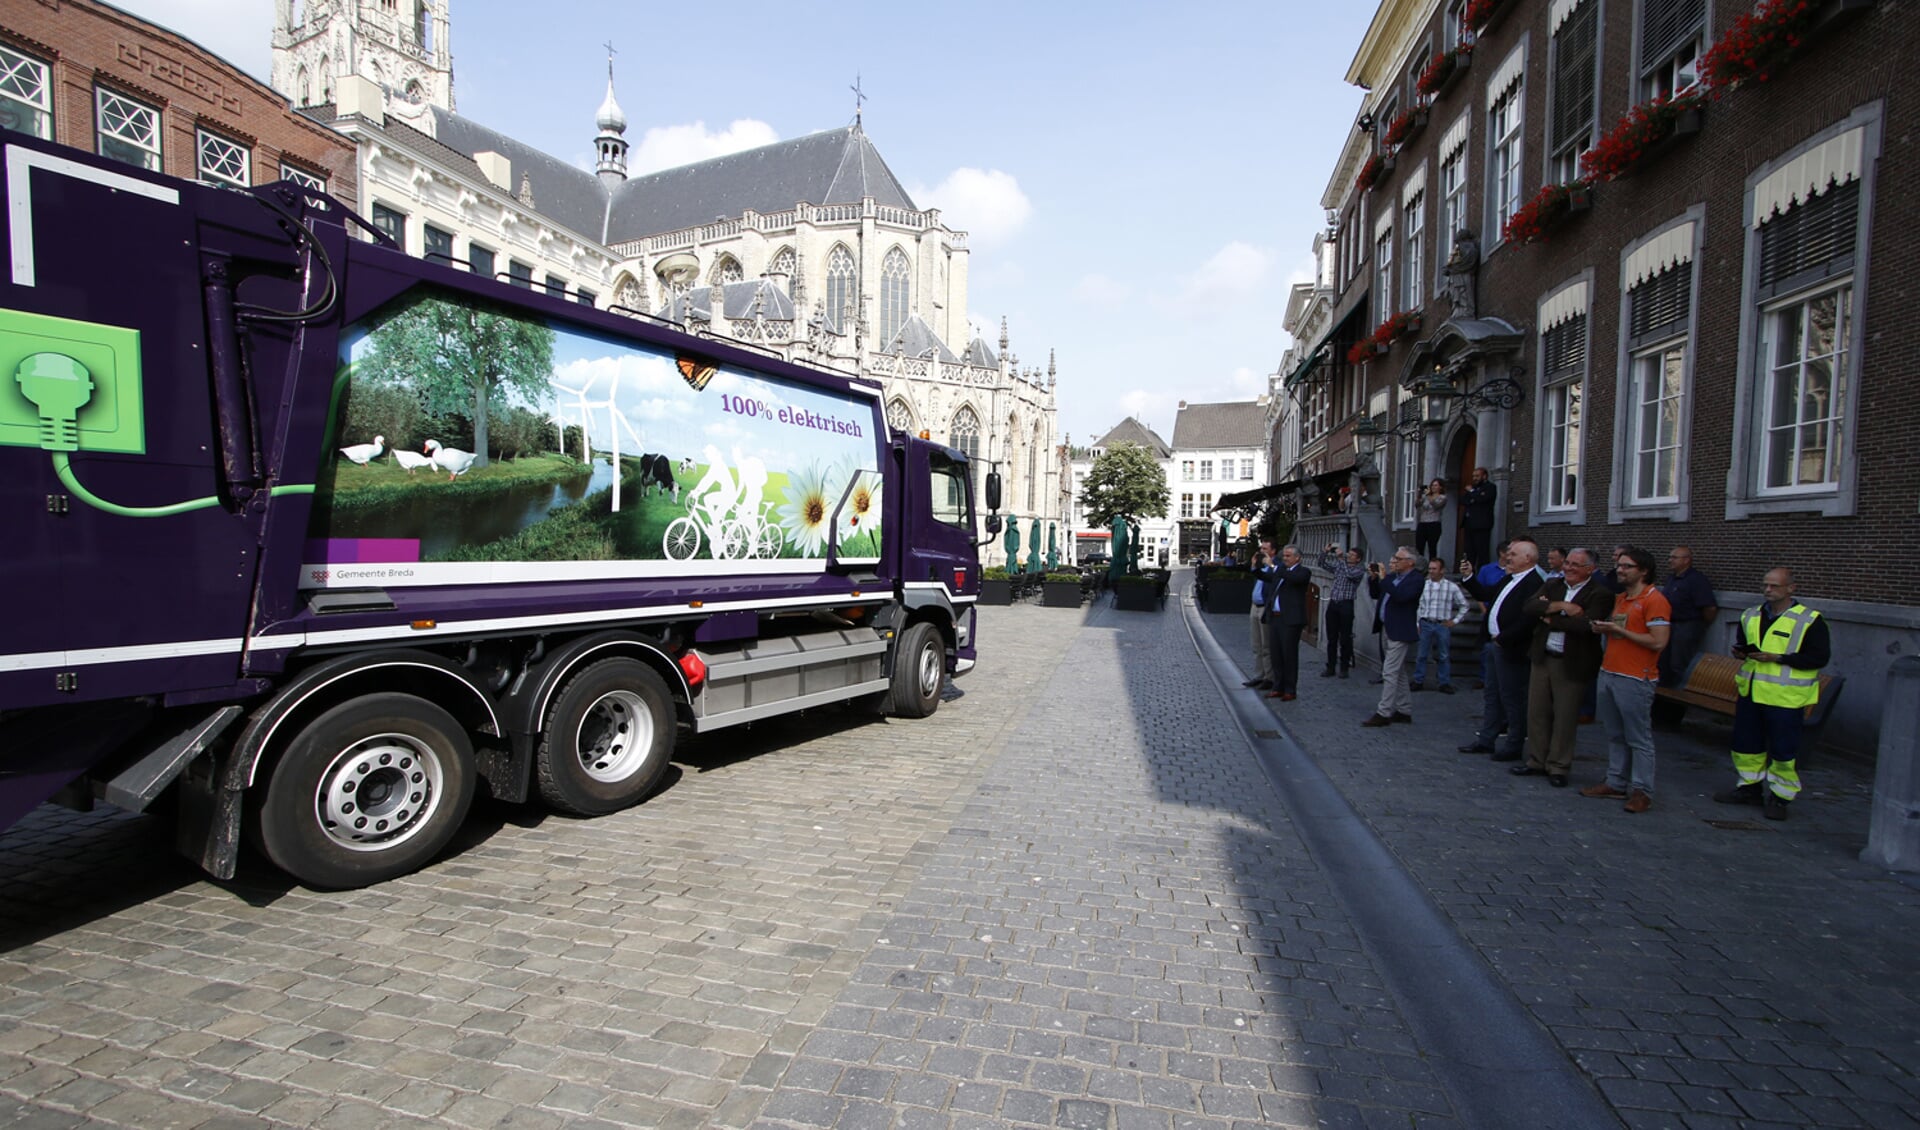 De eerste volledig elektrische vuilniswagen rijdt sinds maandag 21 augustus officieel door Breda.